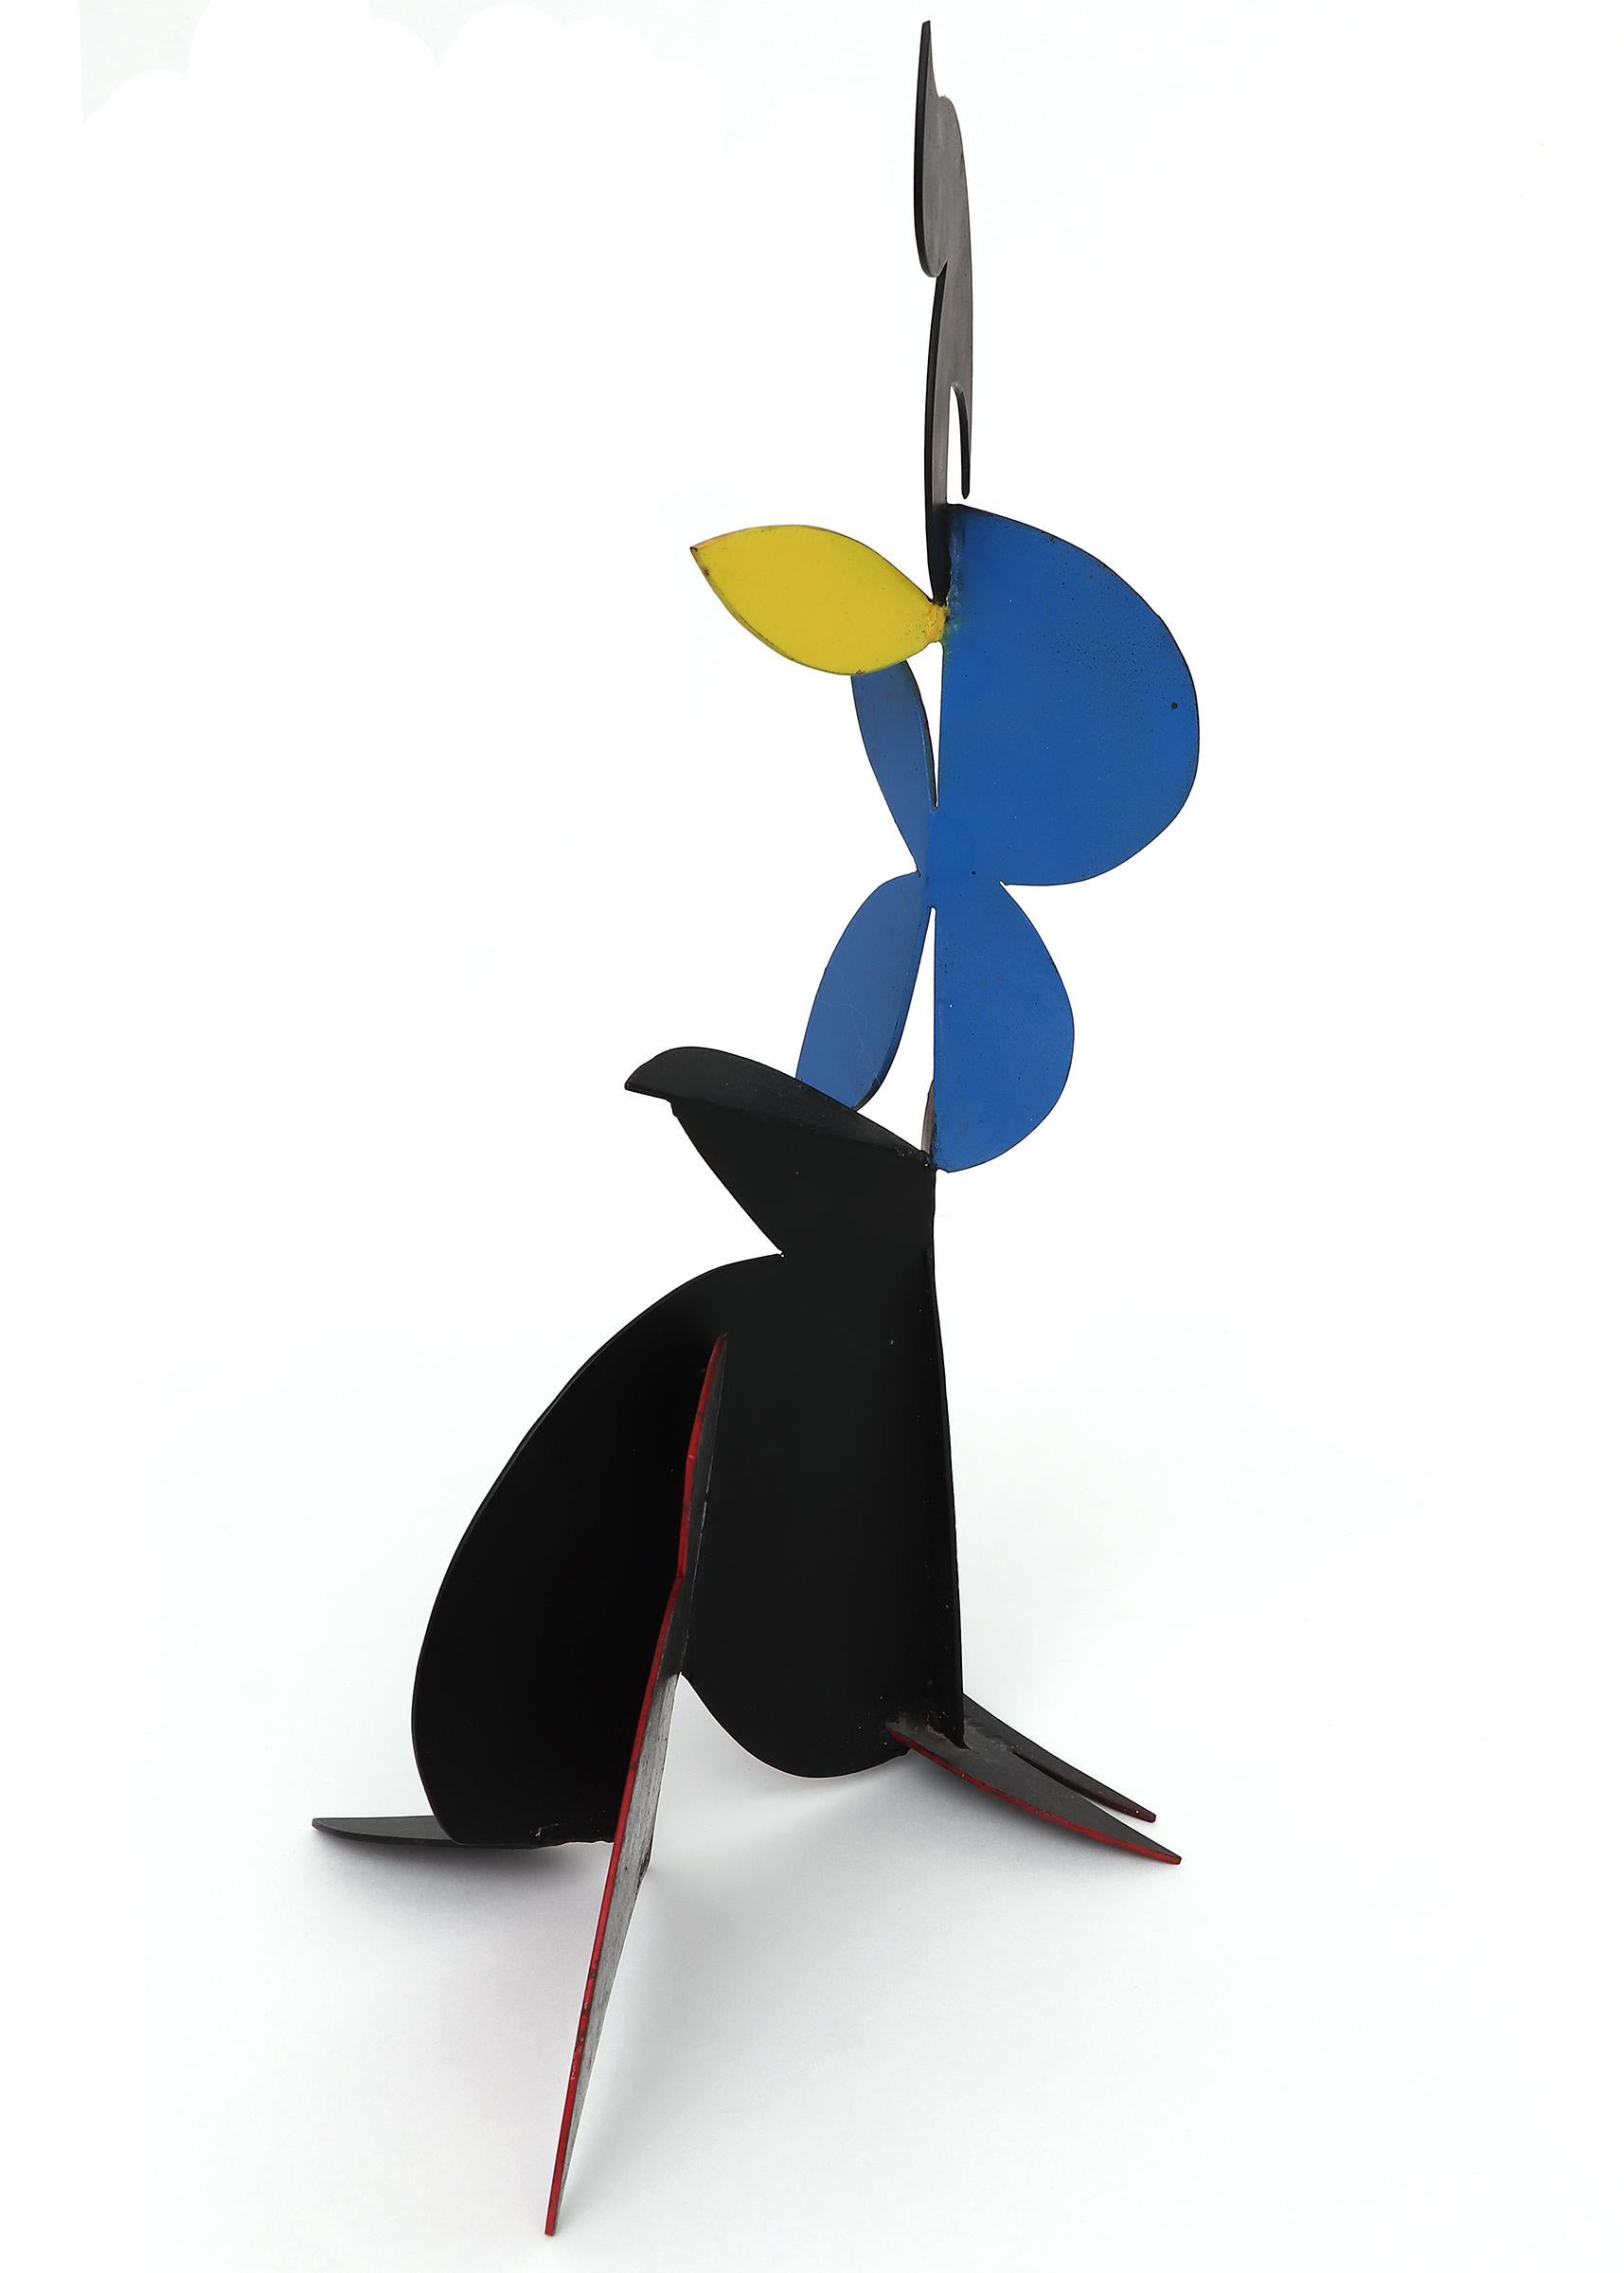 Mehrfarbige abstrakte bemalte Metallskulptur von Edward Chavez, American Modern (Abstrakt), Sculpture, von Edward Arcenio Chavez